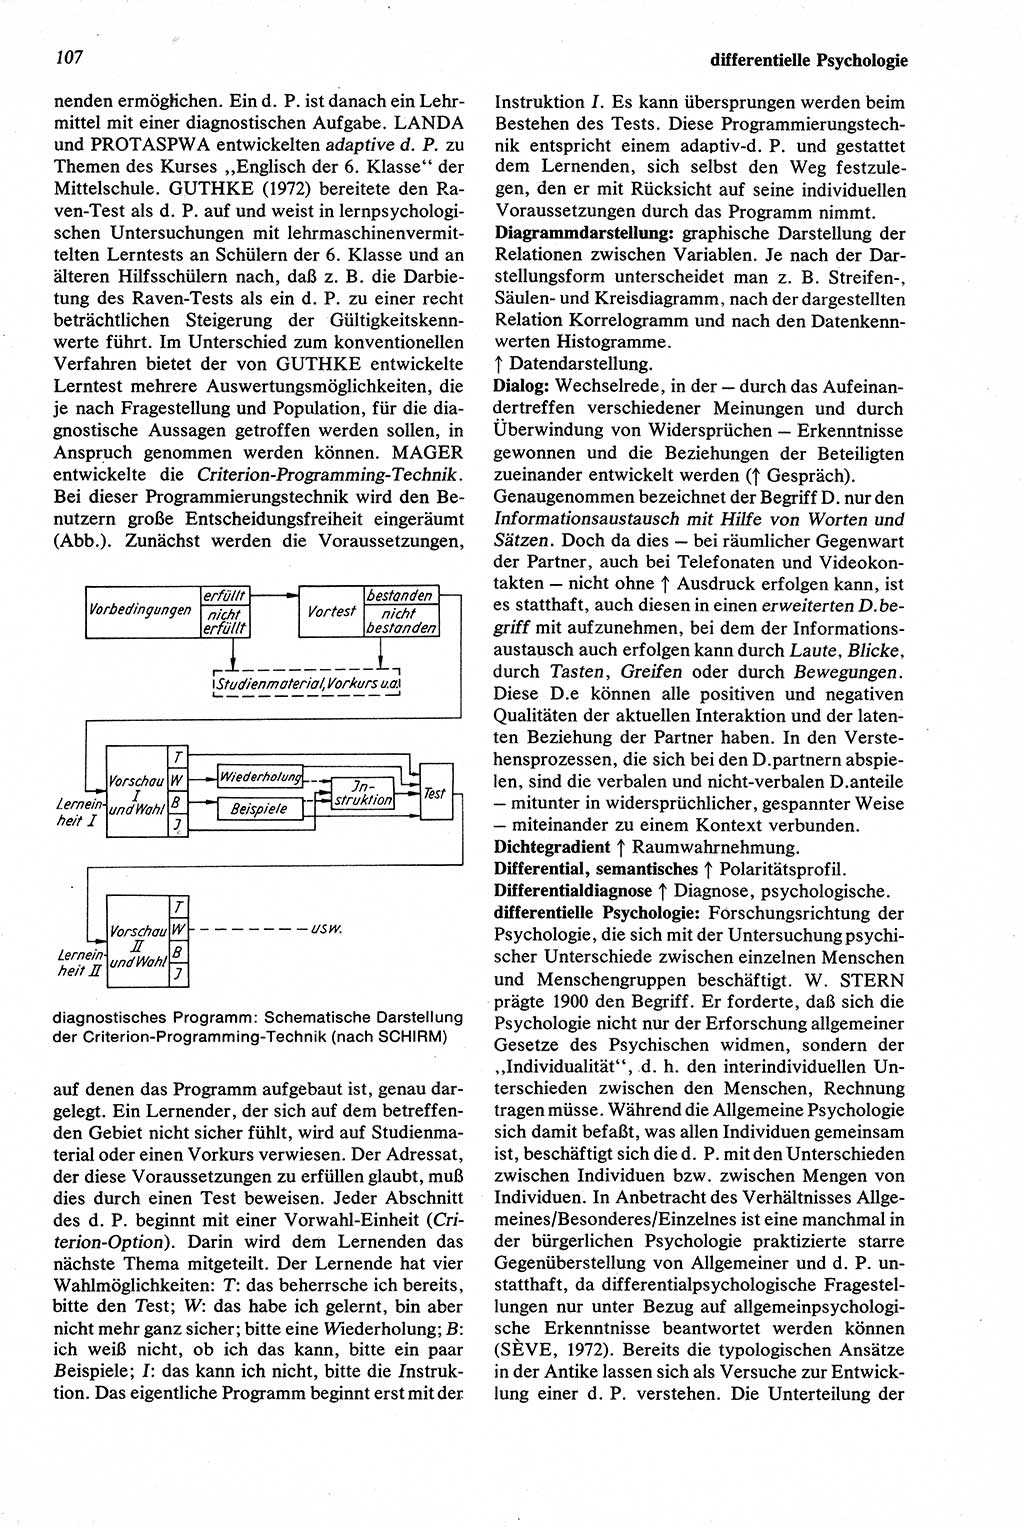 Wörterbuch der Psychologie [Deutsche Demokratische Republik (DDR)] 1976, Seite 107 (Wb. Psych. DDR 1976, S. 107)